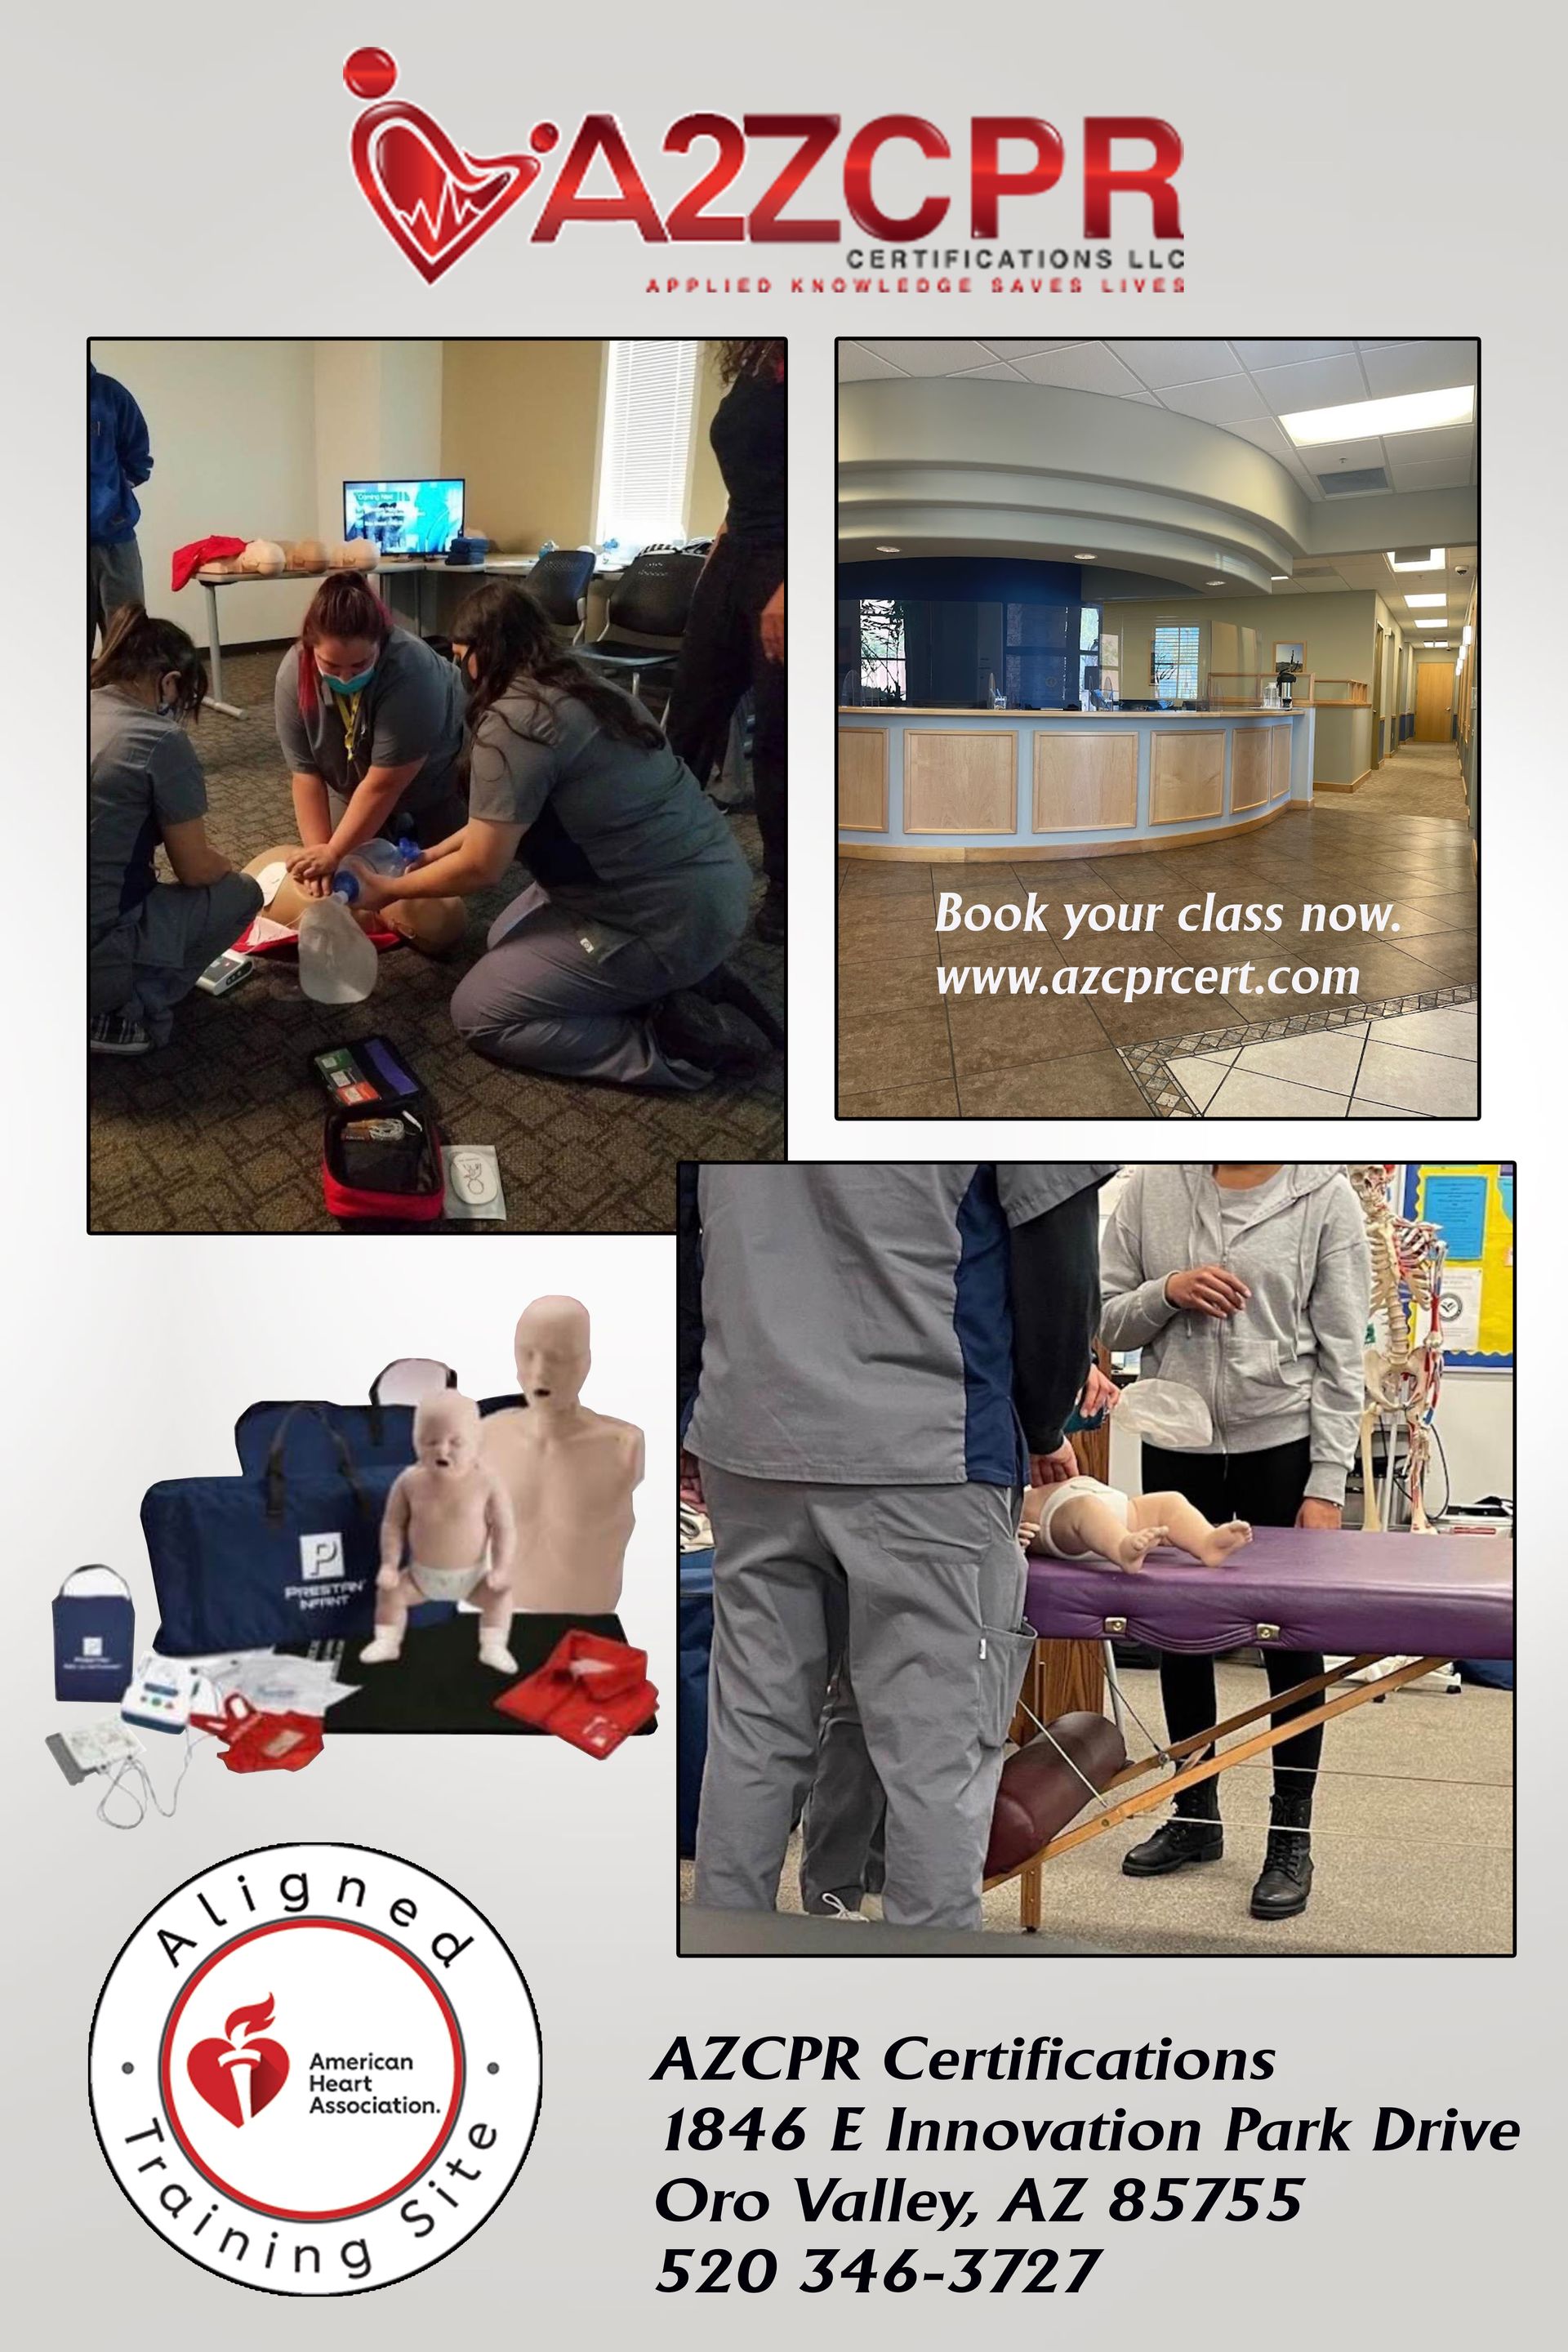 CPR Training Classes in Tucson AZ